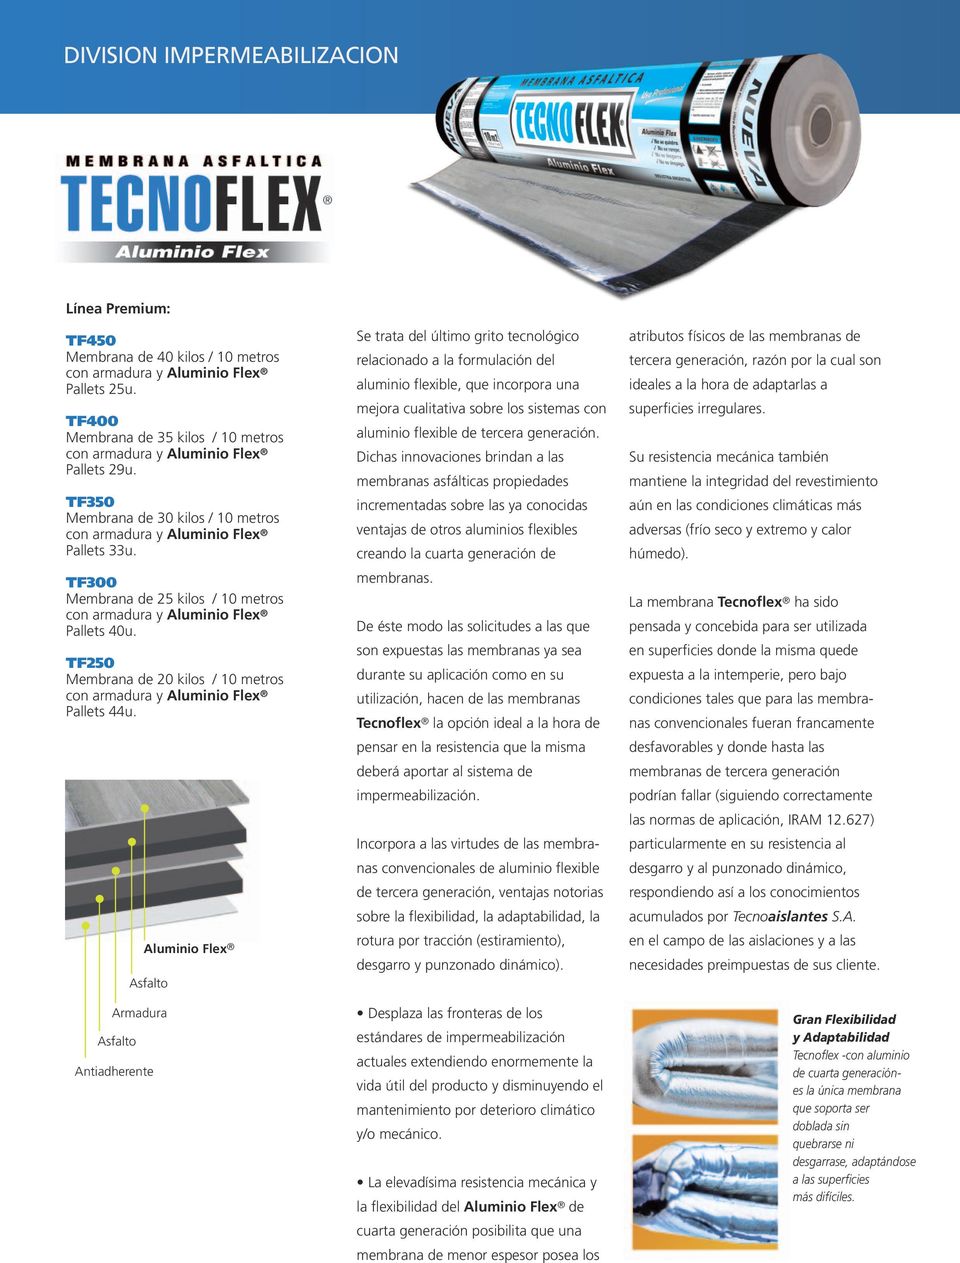 Aluminio Flex Armadura Se trata del último grito tecnológico relacionado a la formulación del aluminio flexible, que incorpora una mejora cualitativa sobre los sistemas con aluminio flexible de